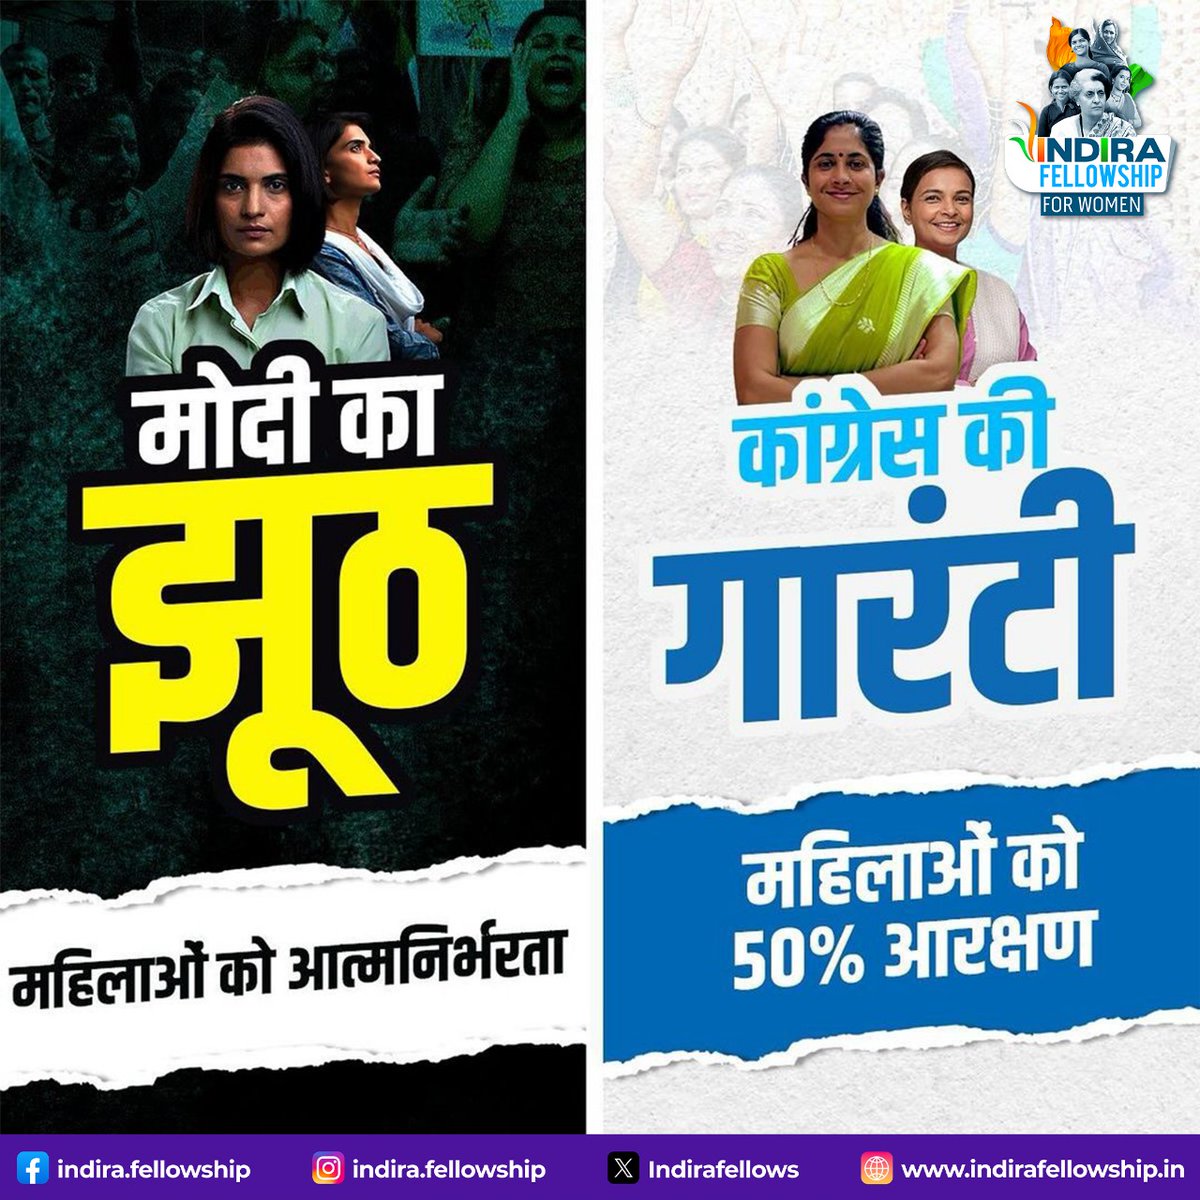 कांग्रेस की गारंटी के आगे नही चलेगा कोई झूठ!

हम महिलाओं का संघर्ष,
आधी हिस्सेदारी तक है।

#INDIAAlliance #Vote4INDIA #CongressAaRahiHai #BJPFailsIndia #SoniaGandhi